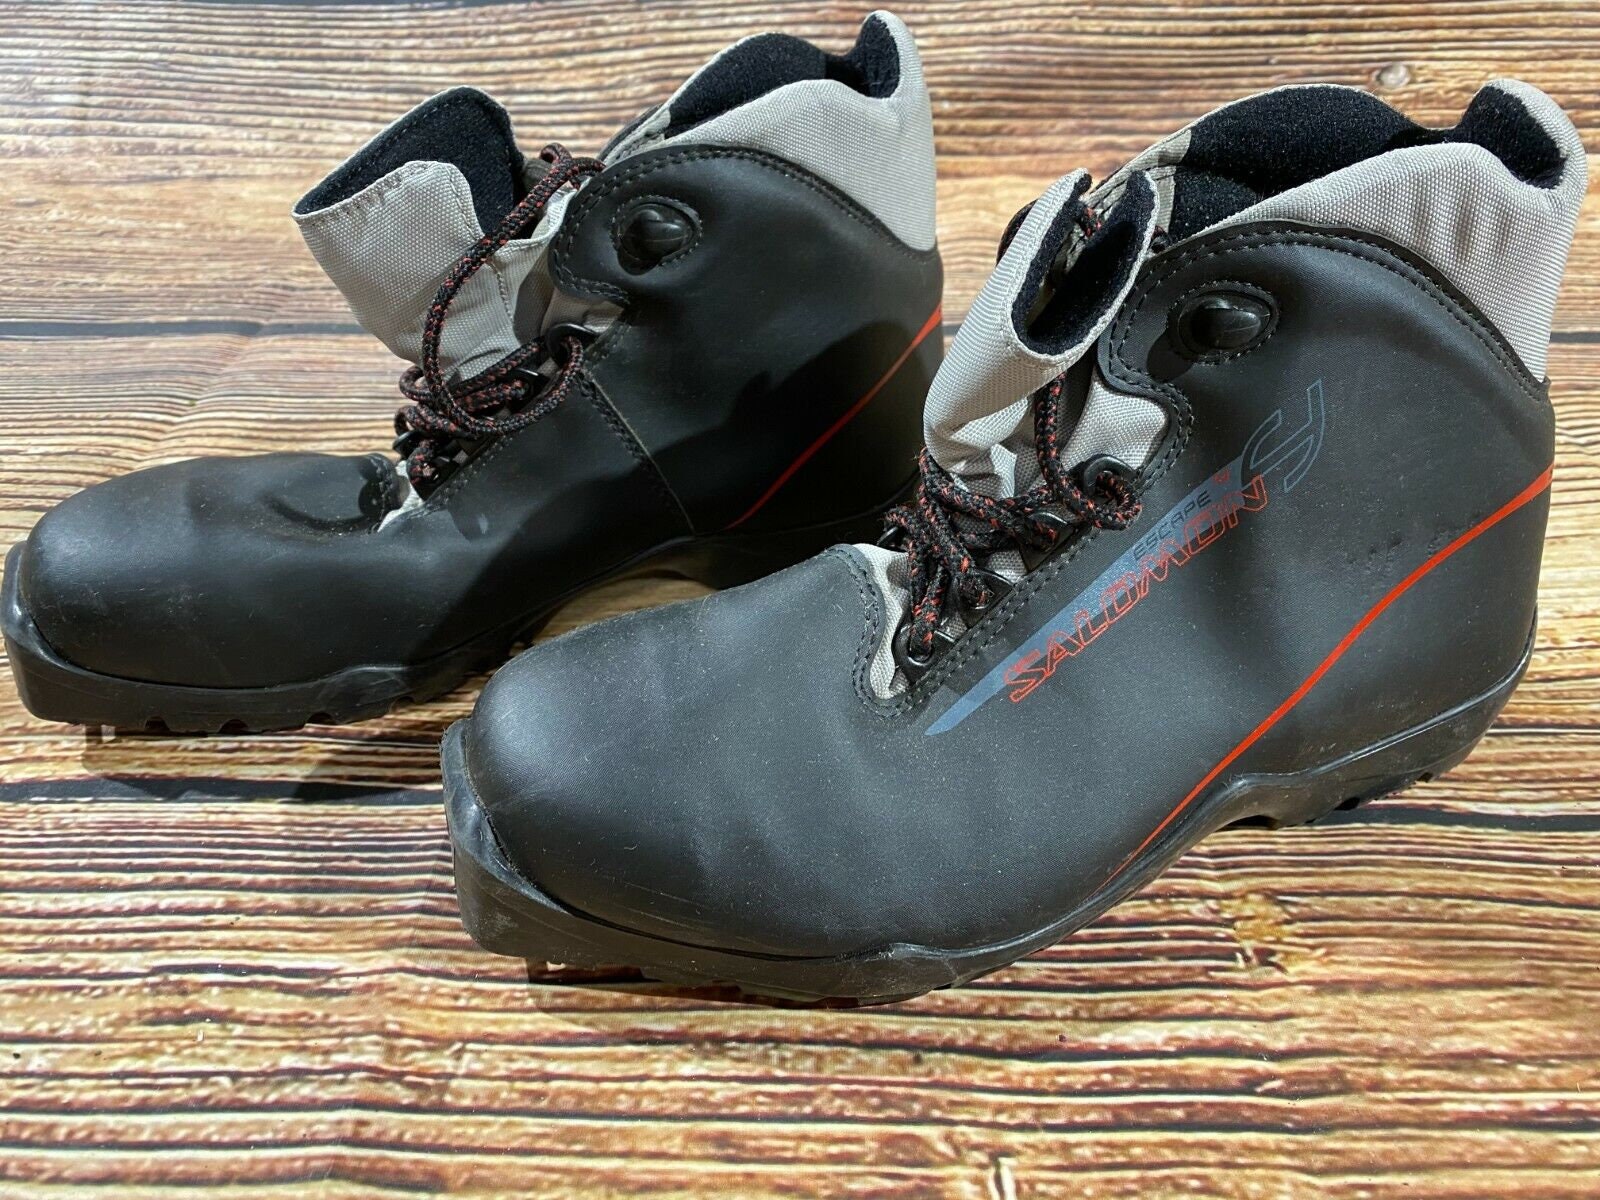 SALOMON Escape 4 Cross Country Ski Boots EU43 US9.5 SNS - Denmark